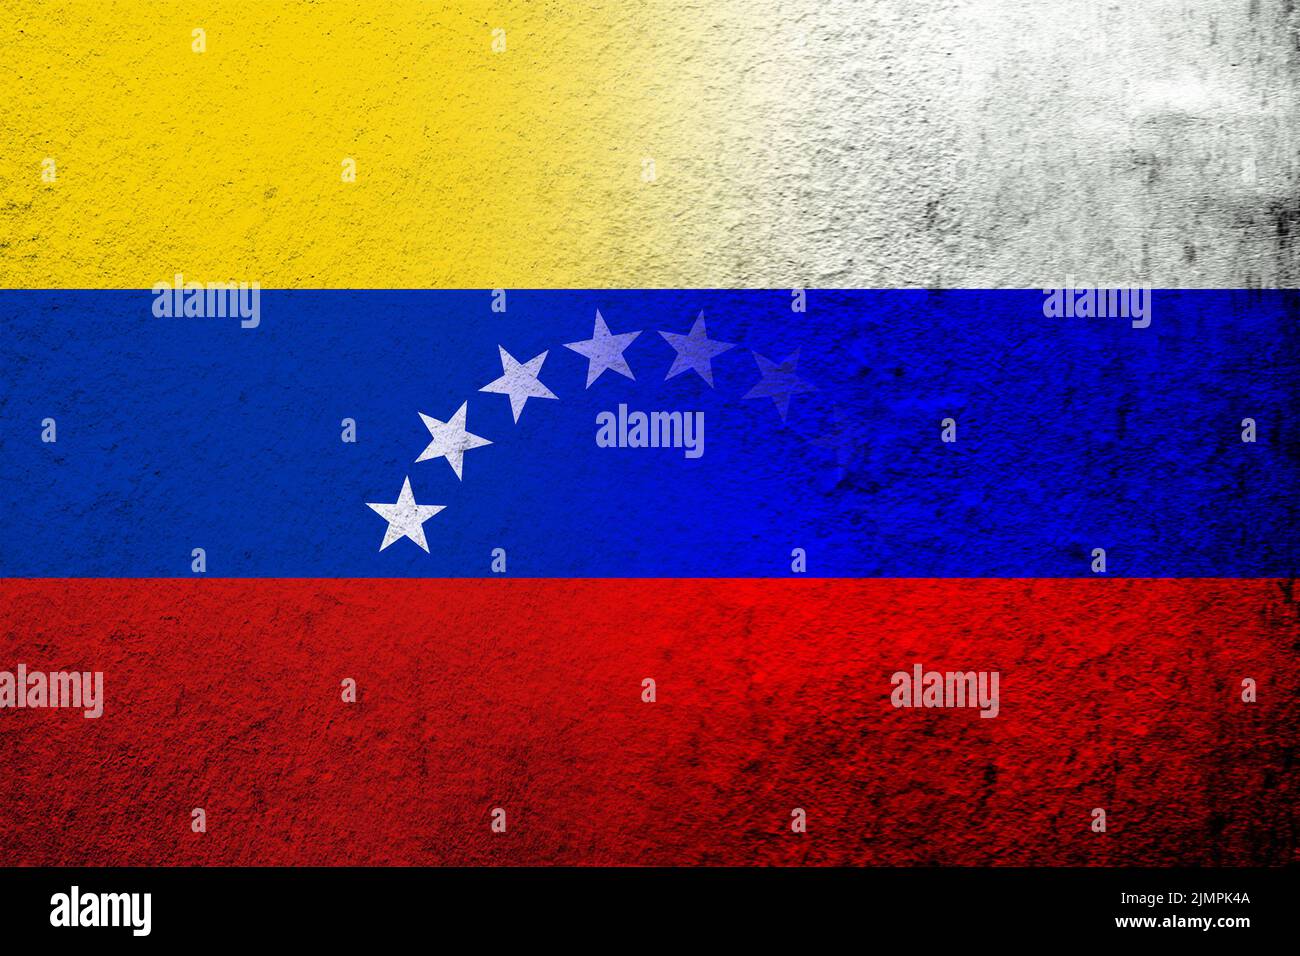 Drapeau national de la Fédération de Russie avec la République bolivarienne du Venezuela drapeau national. Grunge l'arrière-plan Banque D'Images